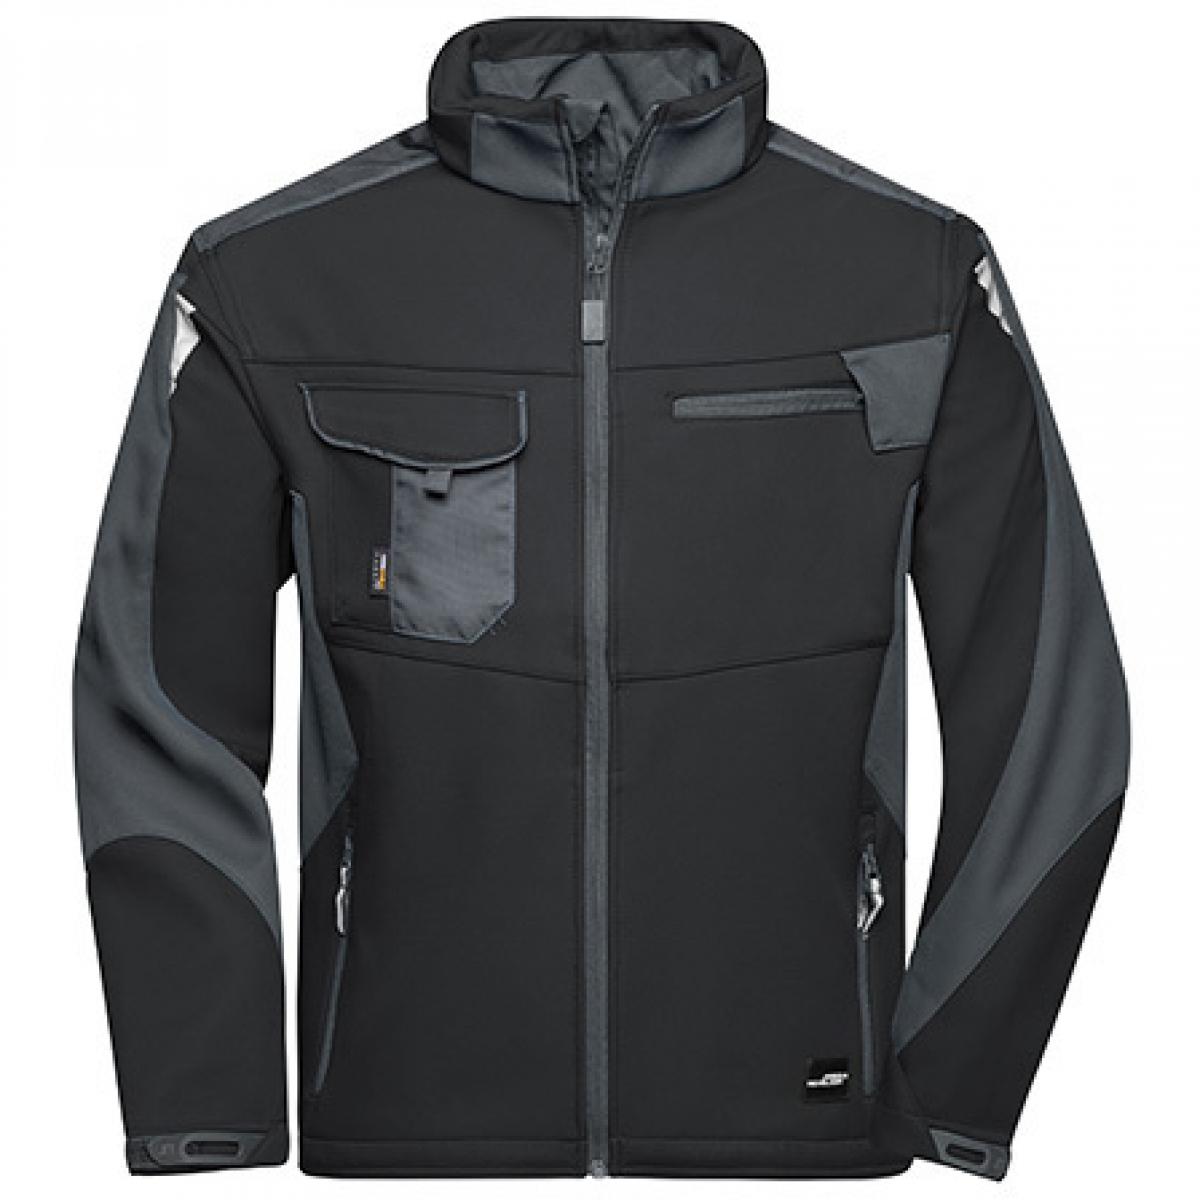 Hersteller: James+Nicholson Herstellernummer: JN844 Artikelbezeichnung: Herren Jacke, Workwear Softshell Jacket -STRONG- Farbe: Black/Carbon